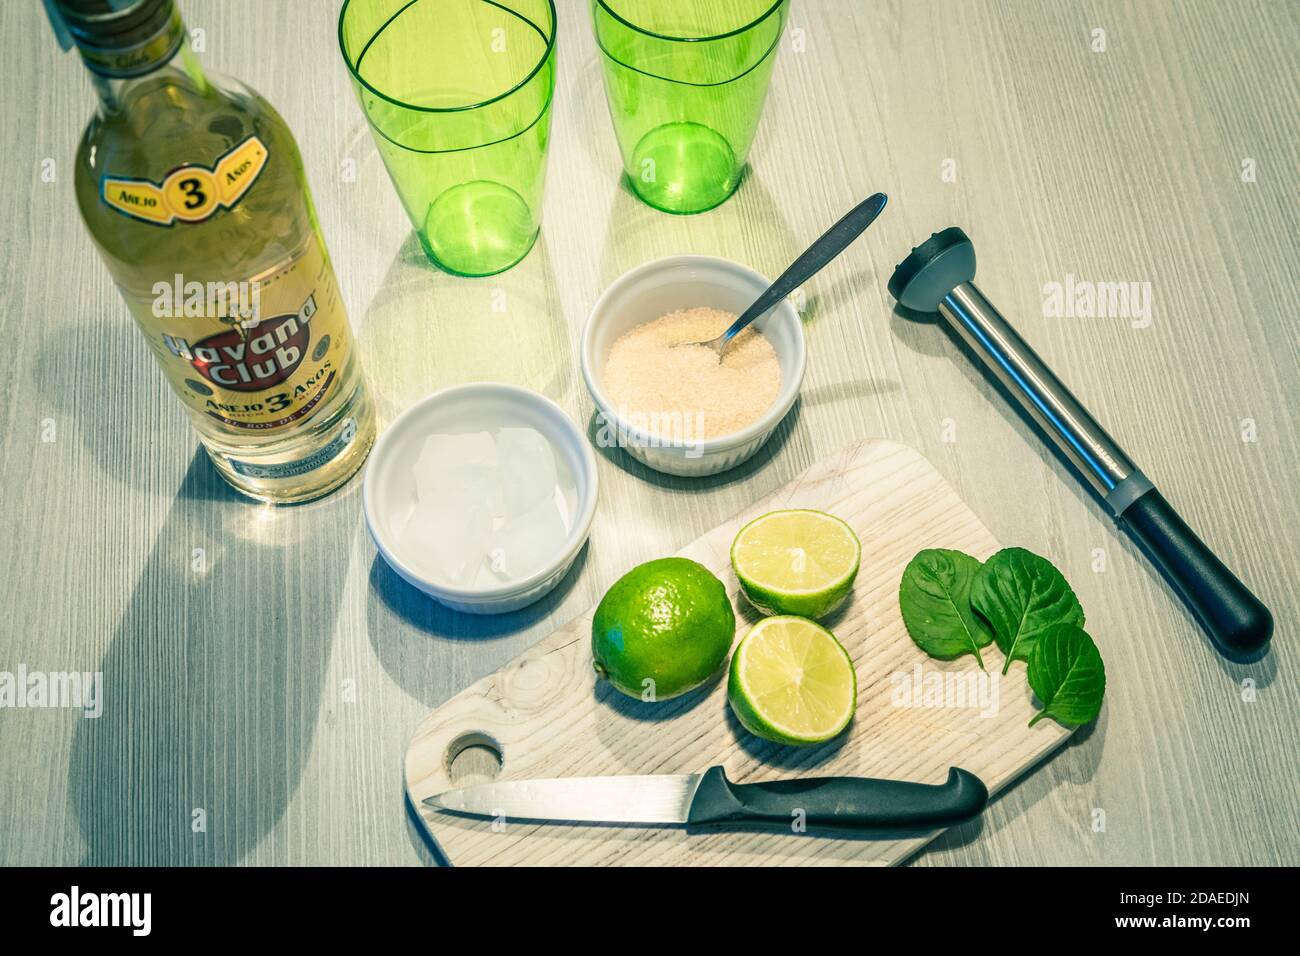 préparation d'un cocktail mojito, ingrédients sur une table en bois et quelques verres verts Banque D'Images